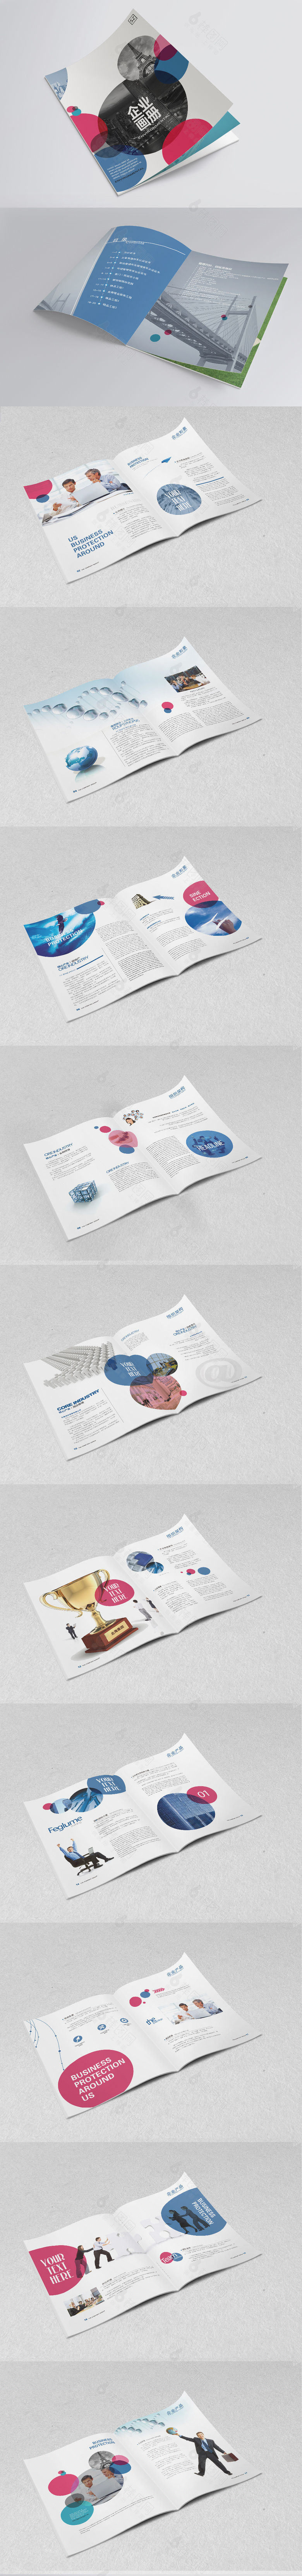 创意圆形企业画册宣传设计